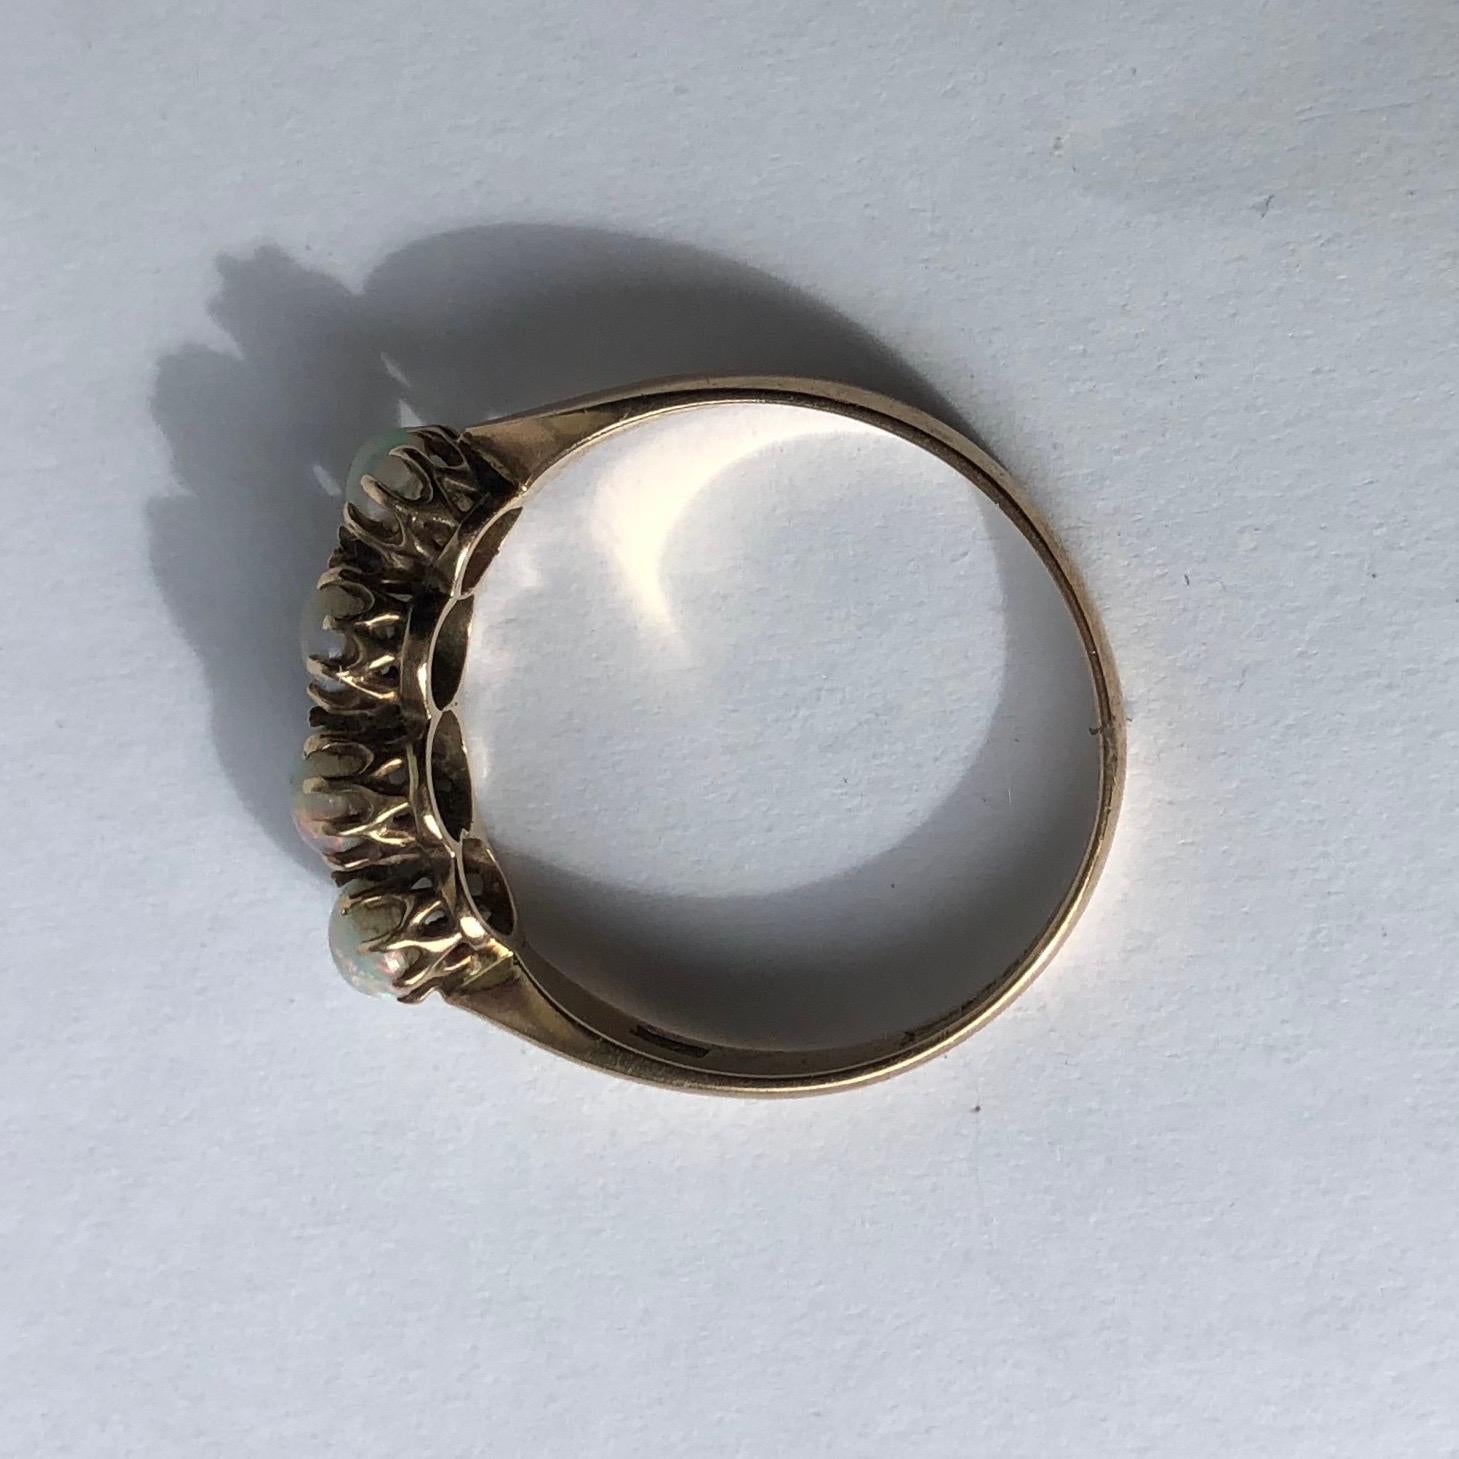 18ct white gold ring